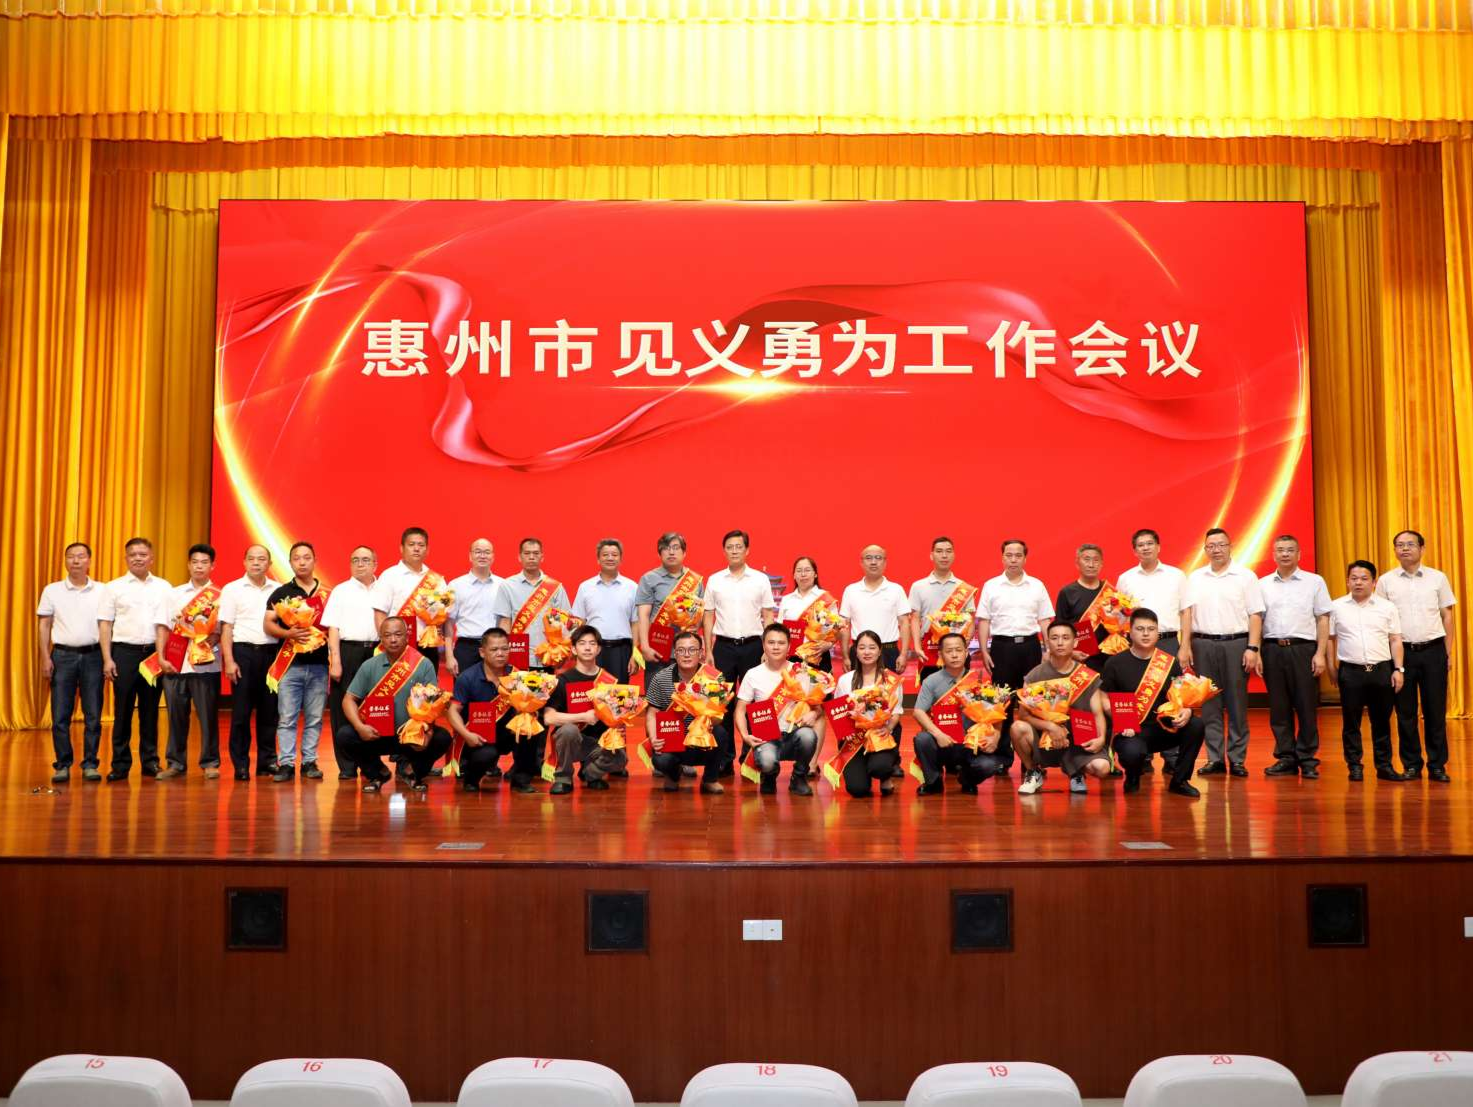 惠州市见义勇为基金会成立 34位见义勇为先进个人和群体获颁荣誉证书